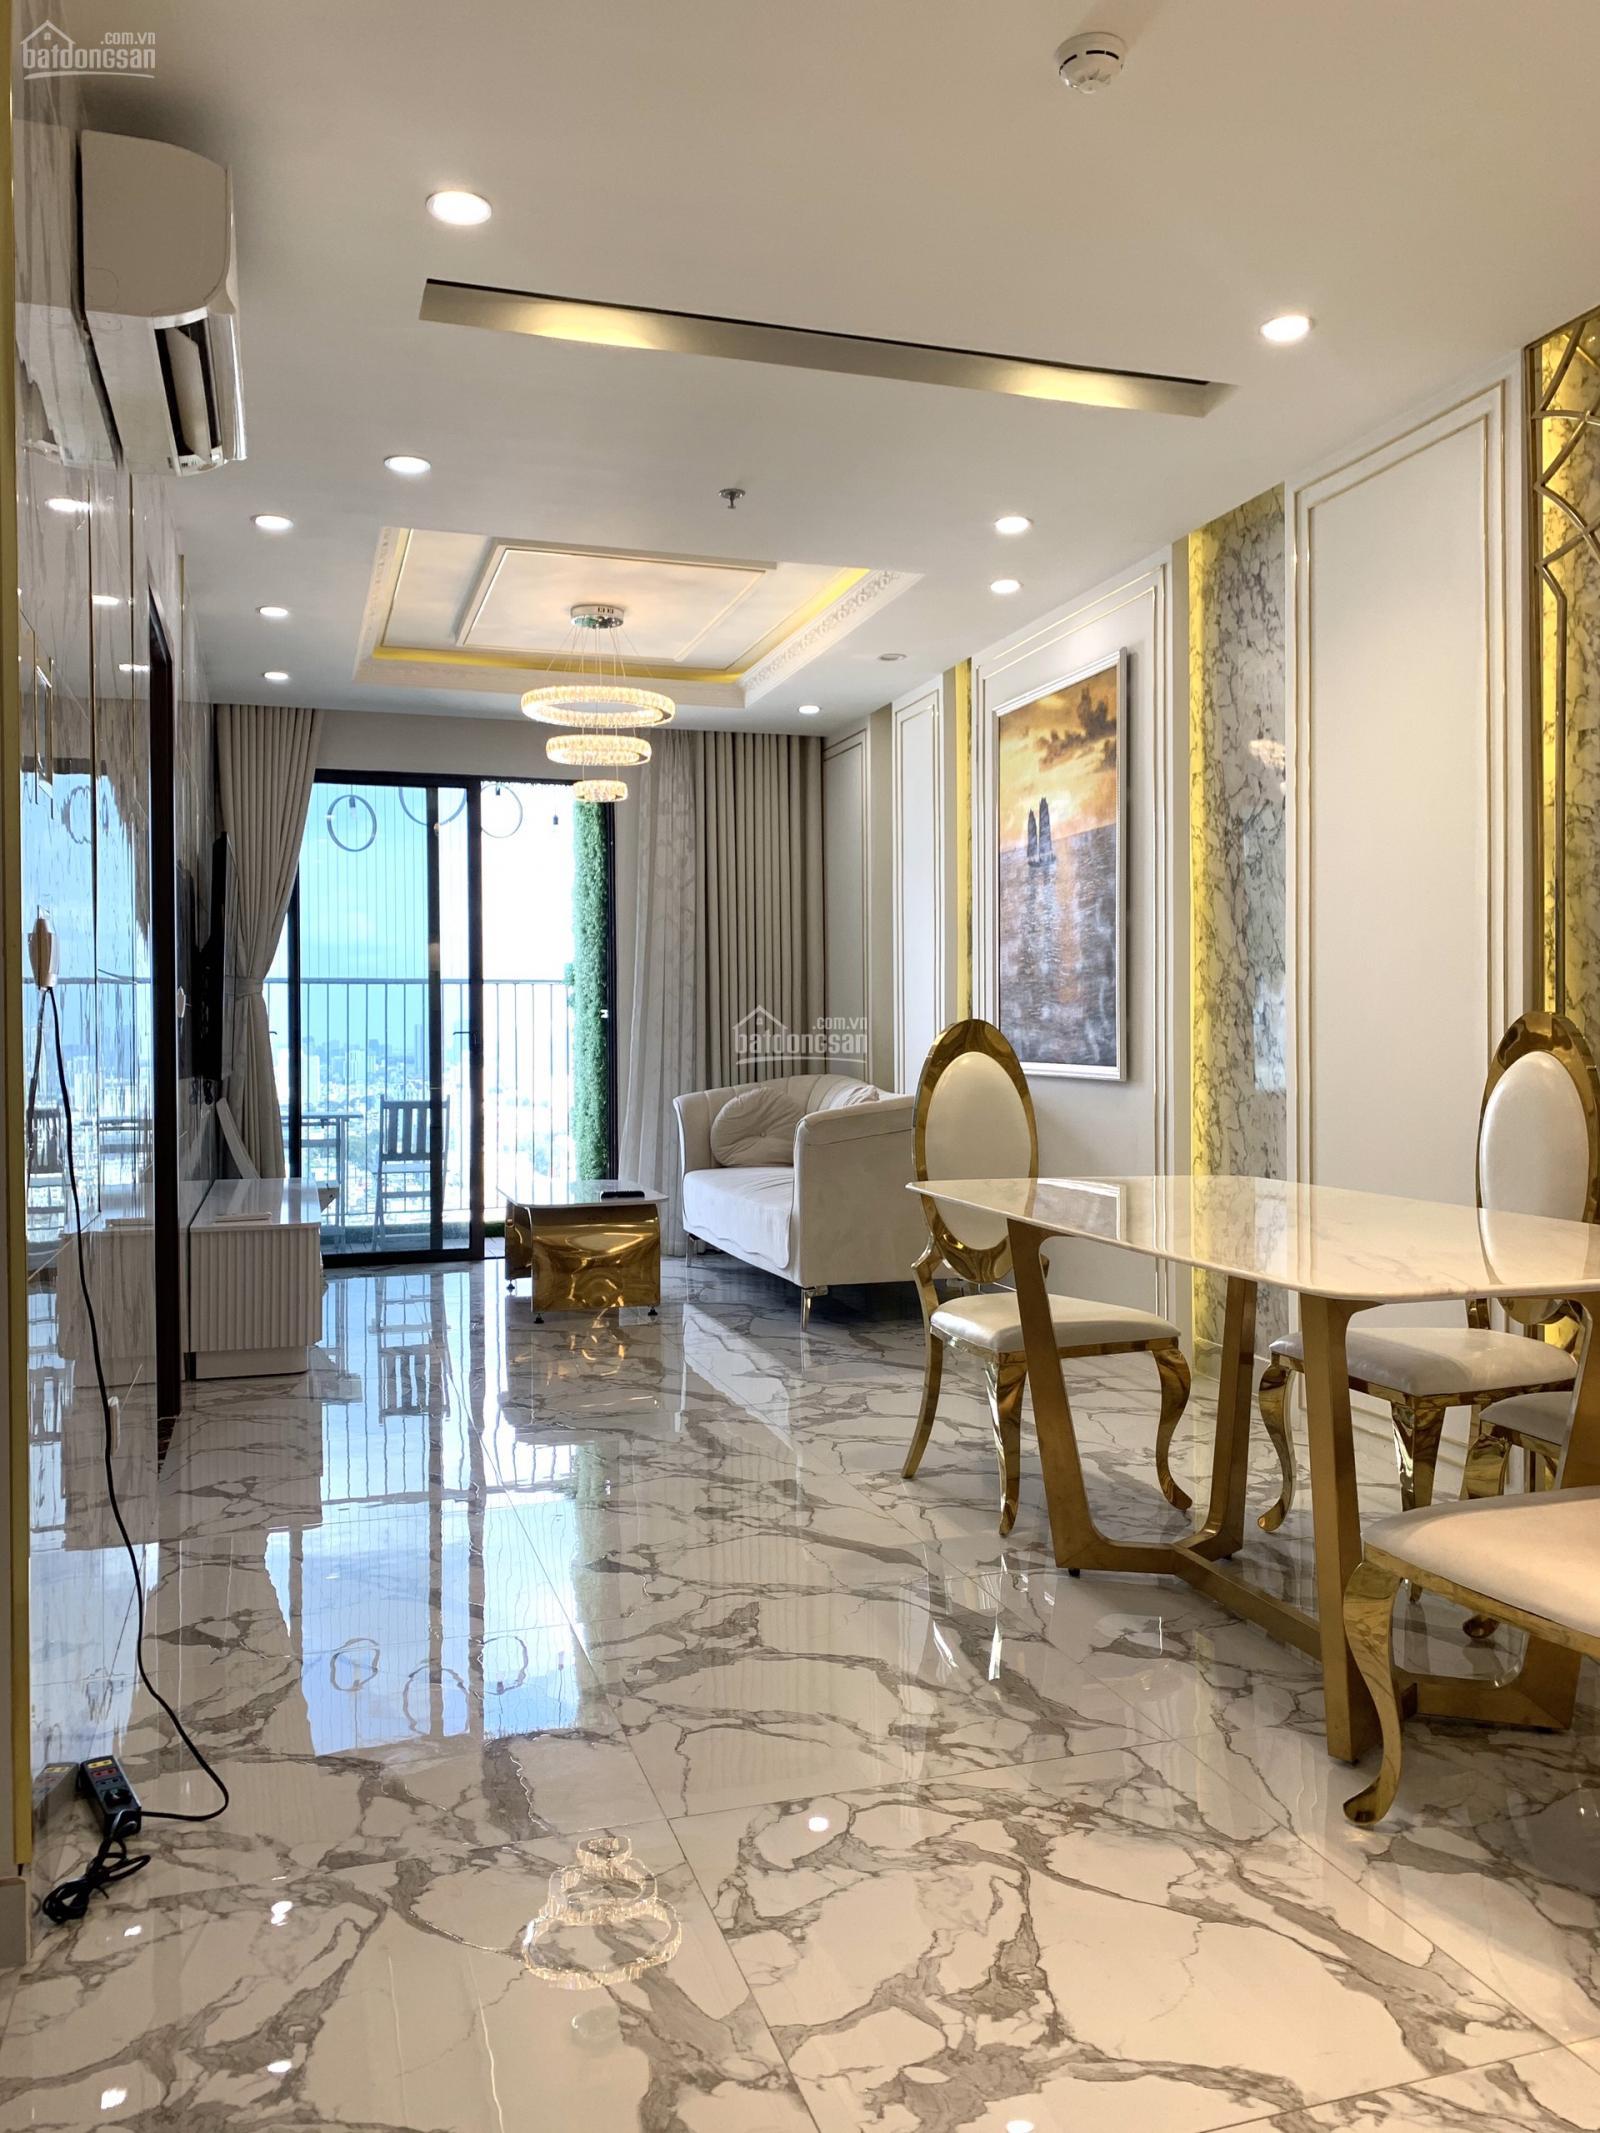 Bán căn hộ Oriental Plaza, Tân Phú, 78m2 2PN 2WC nhà đẹp, tiện ích, giá hấp dẫn.